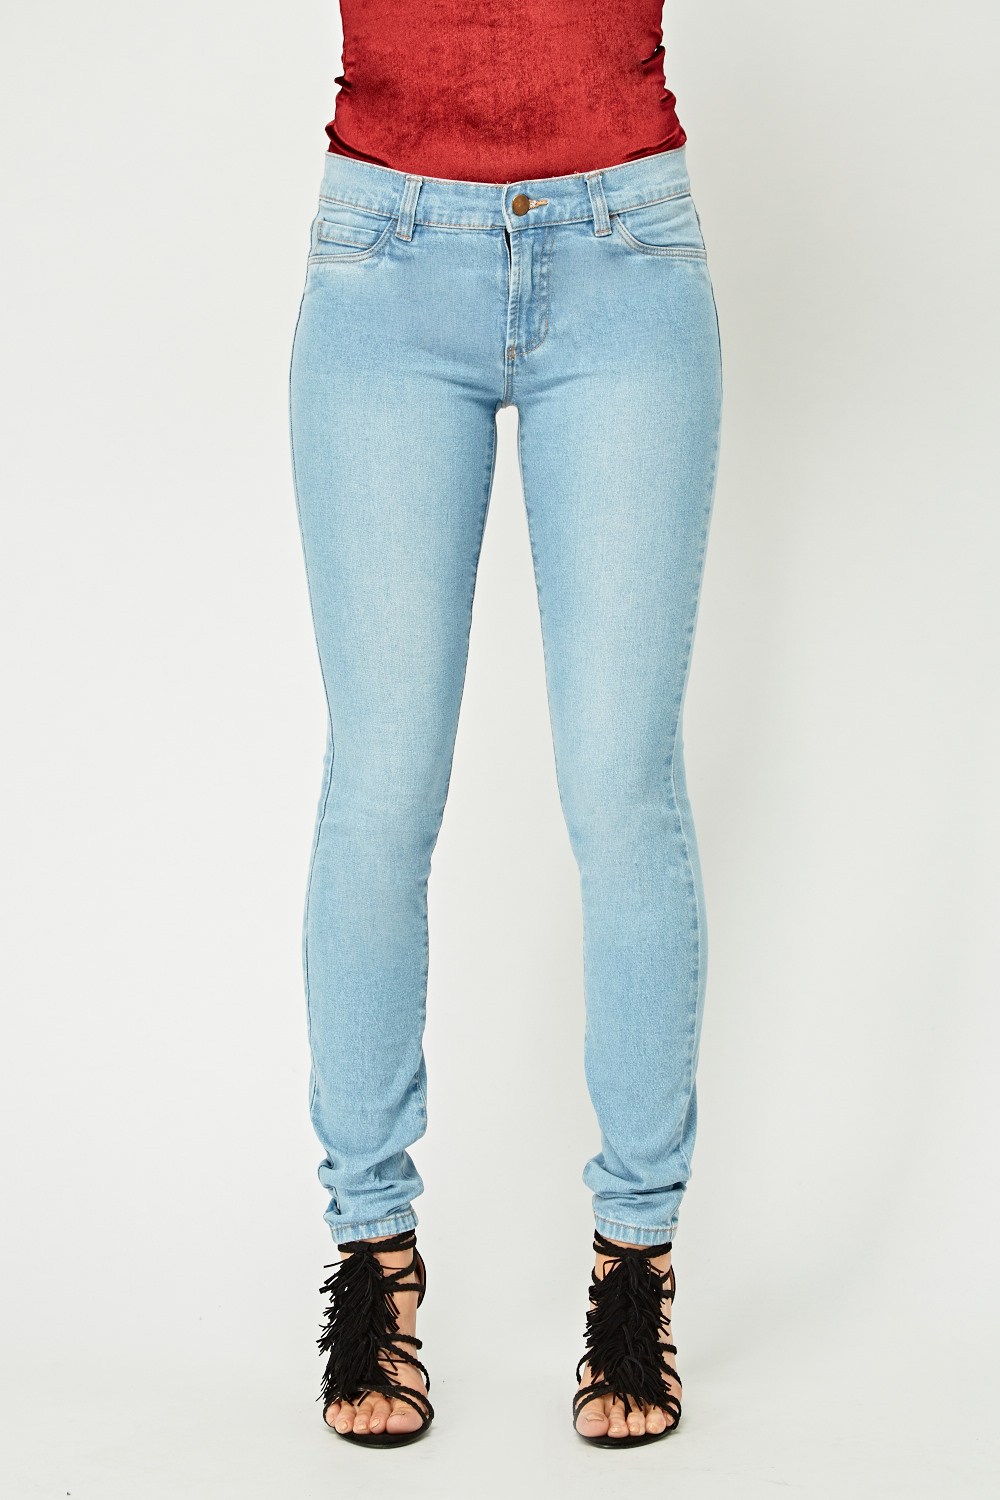 low cut jeans